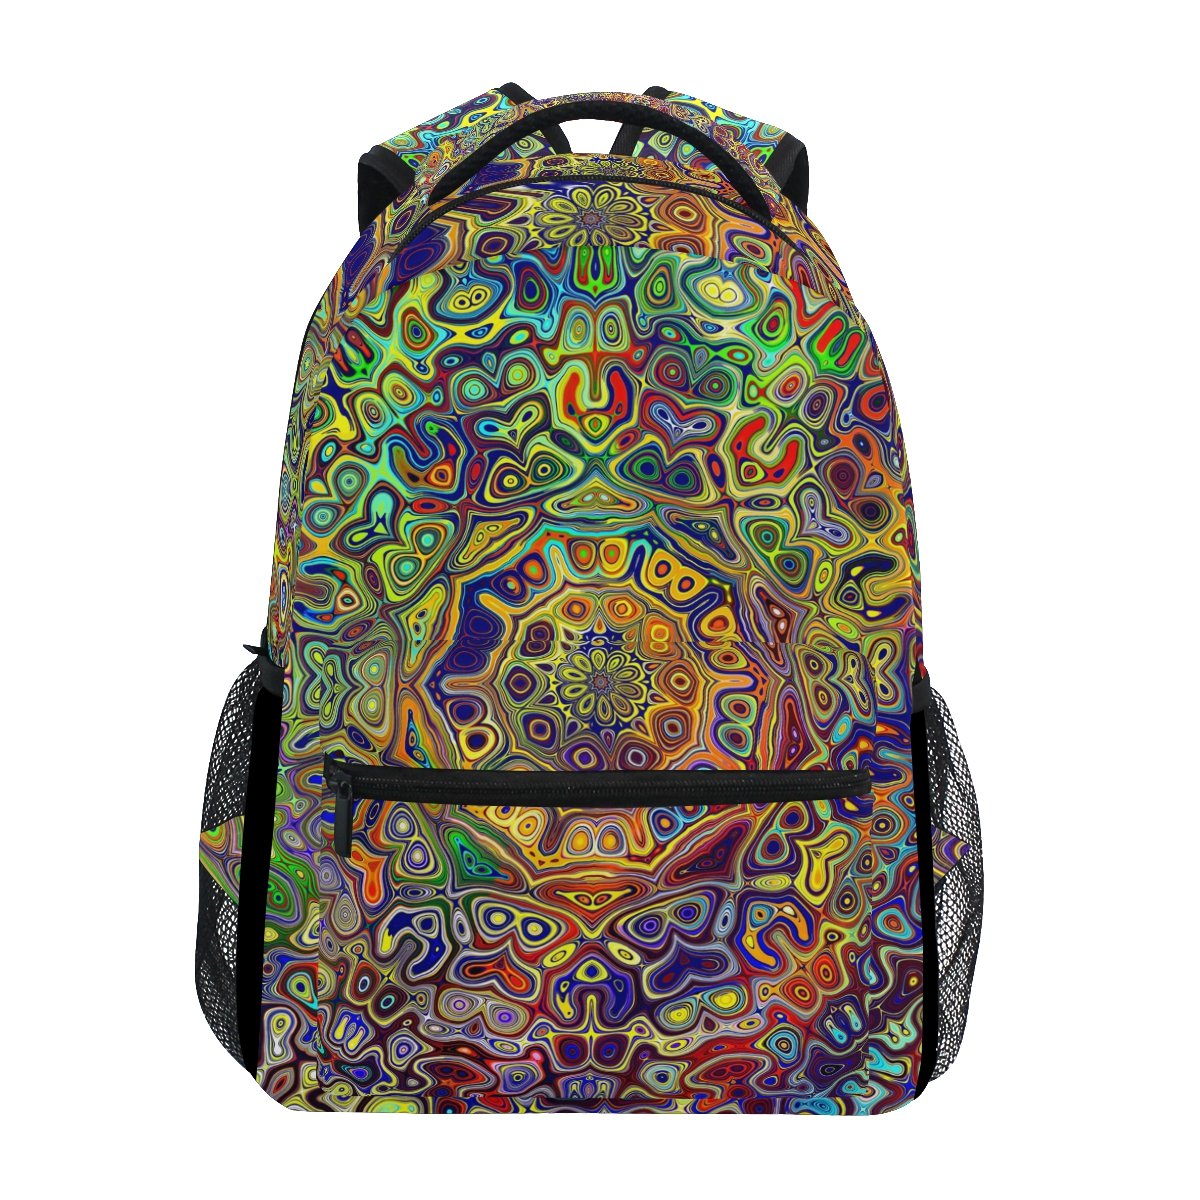 TIZORAX farbiger Rucksack mit psychedelischem Mandala-Fraktal, Schulrucksack oder Büchertasche, auch zum Wandern und Reisen.